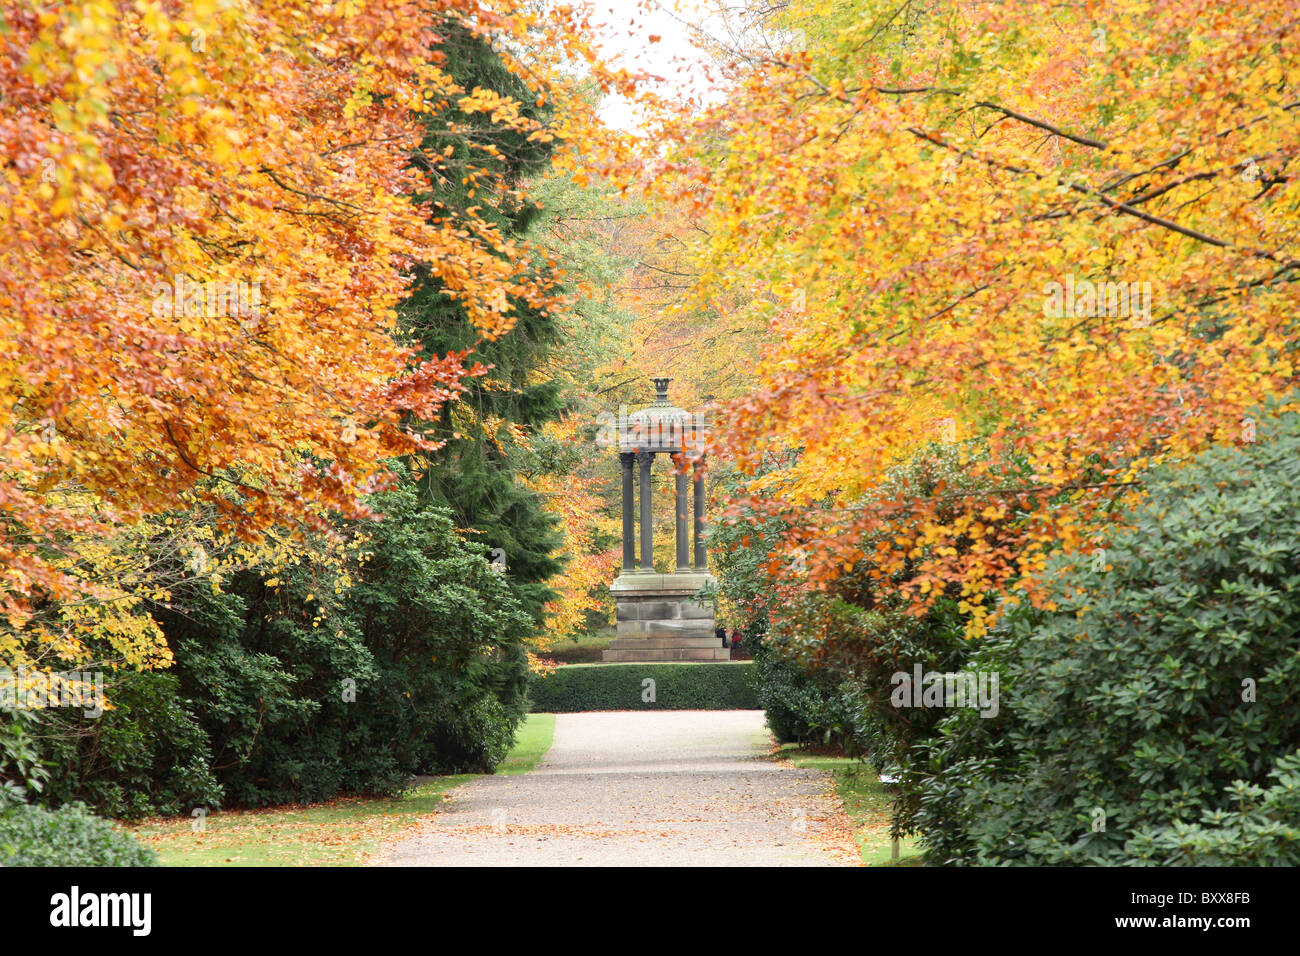 Nachlass von Tatton Park, England. Herbstlicher Blick auf die breiten Fuß mit dem frühen 19. Jahrhundert Choragic Monument im Hintergrund. Stockfoto